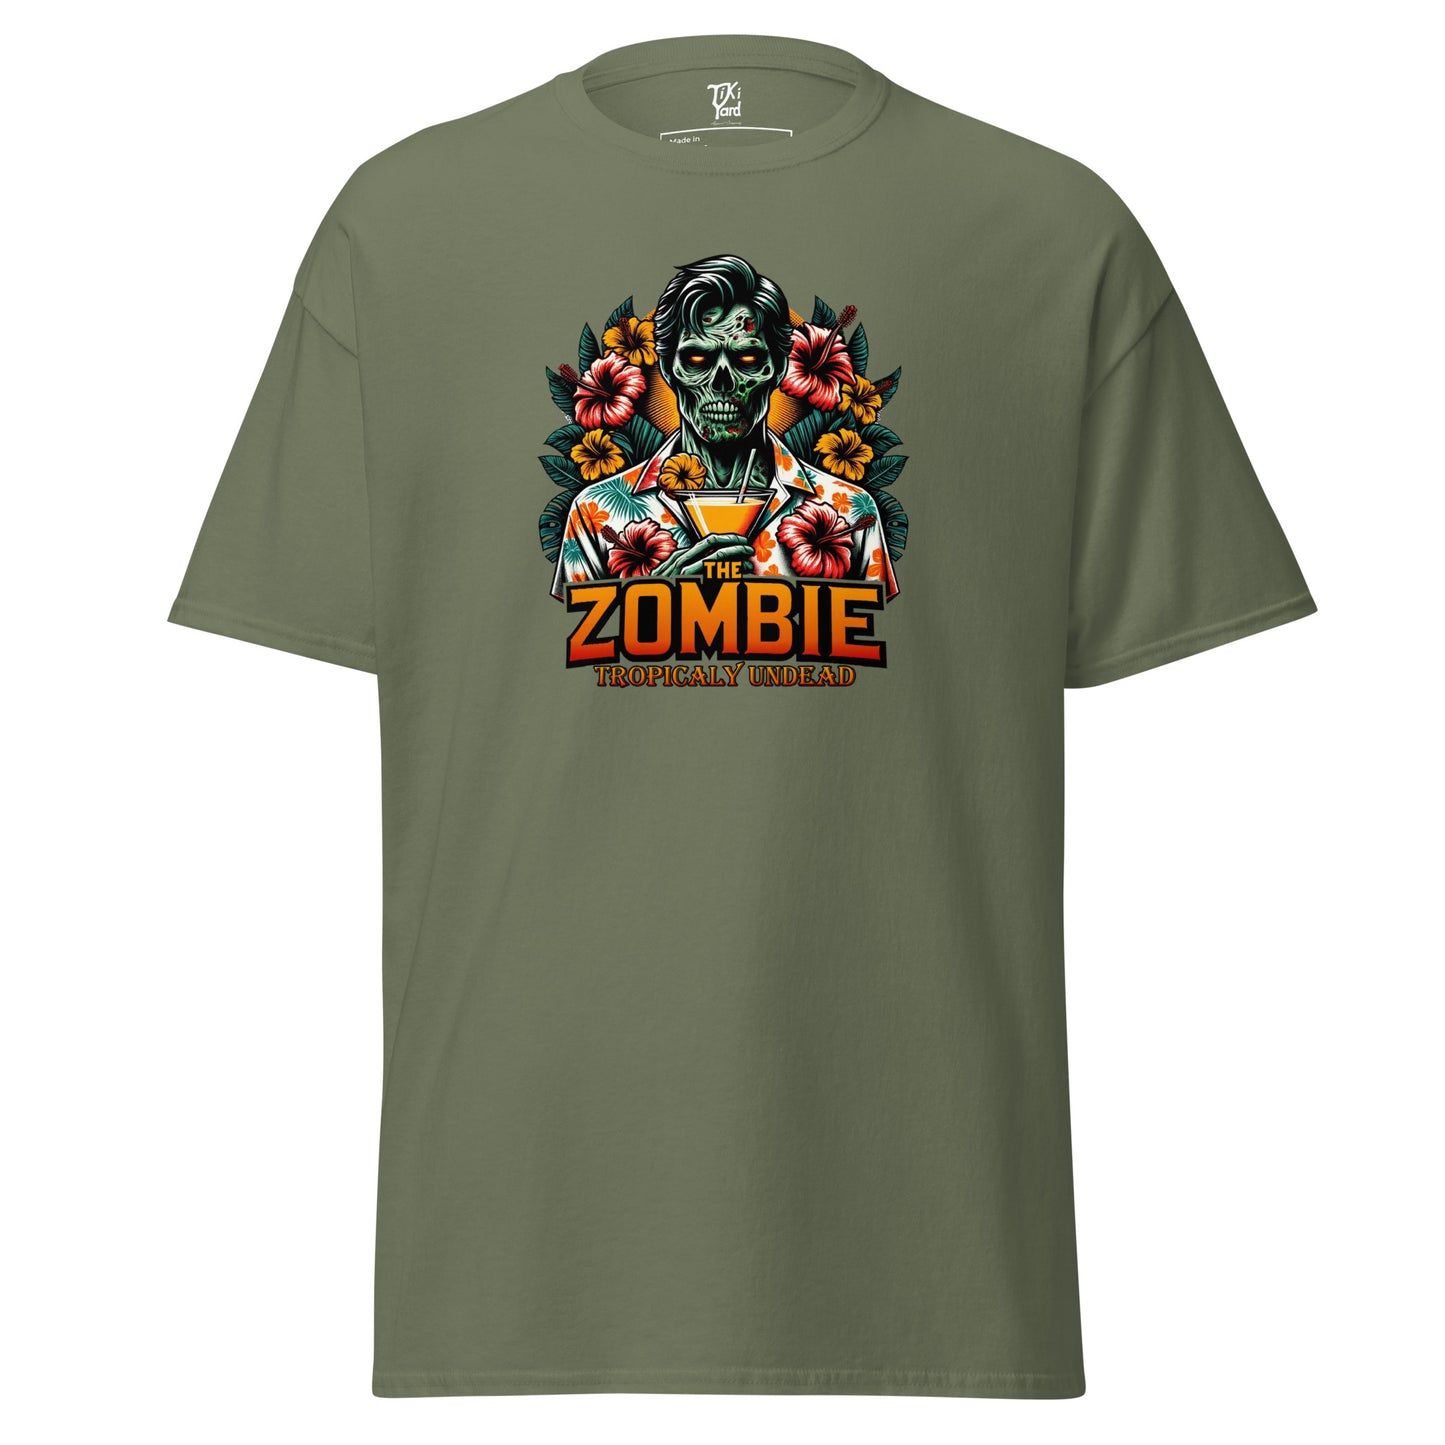 The Zombie - Men's T-Shirt